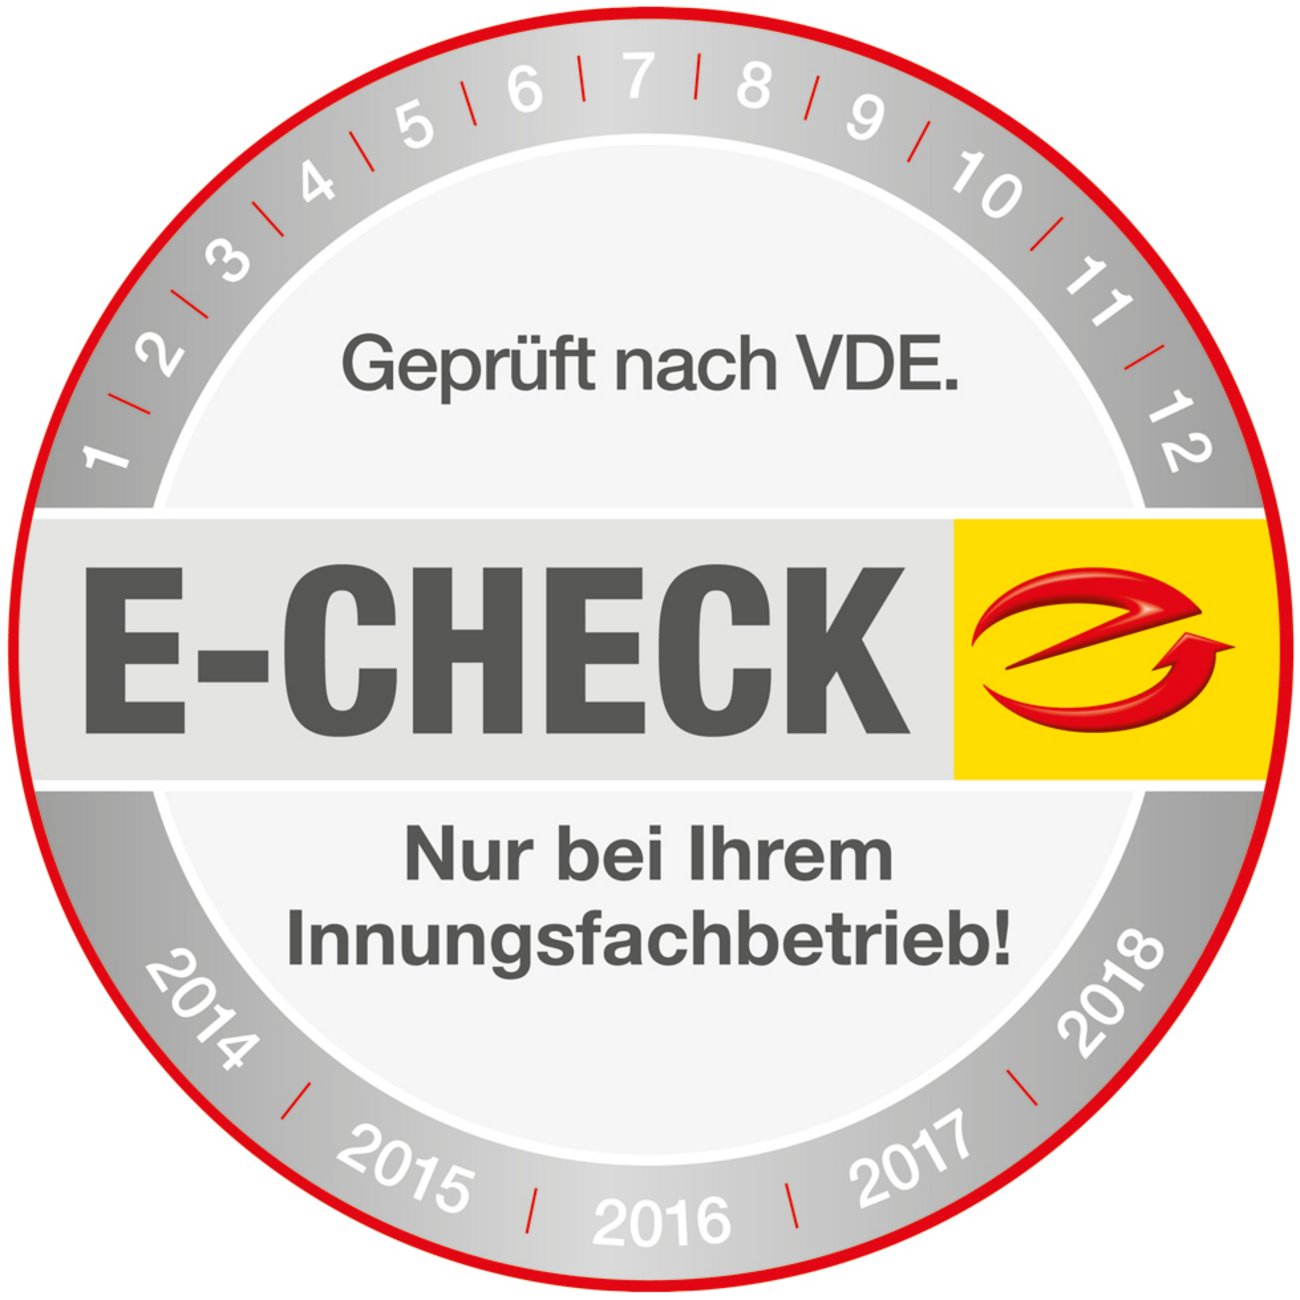 Der E-Check bei Bohl - Netzwerk- und Elektrotechnik in Treuenbrietzen